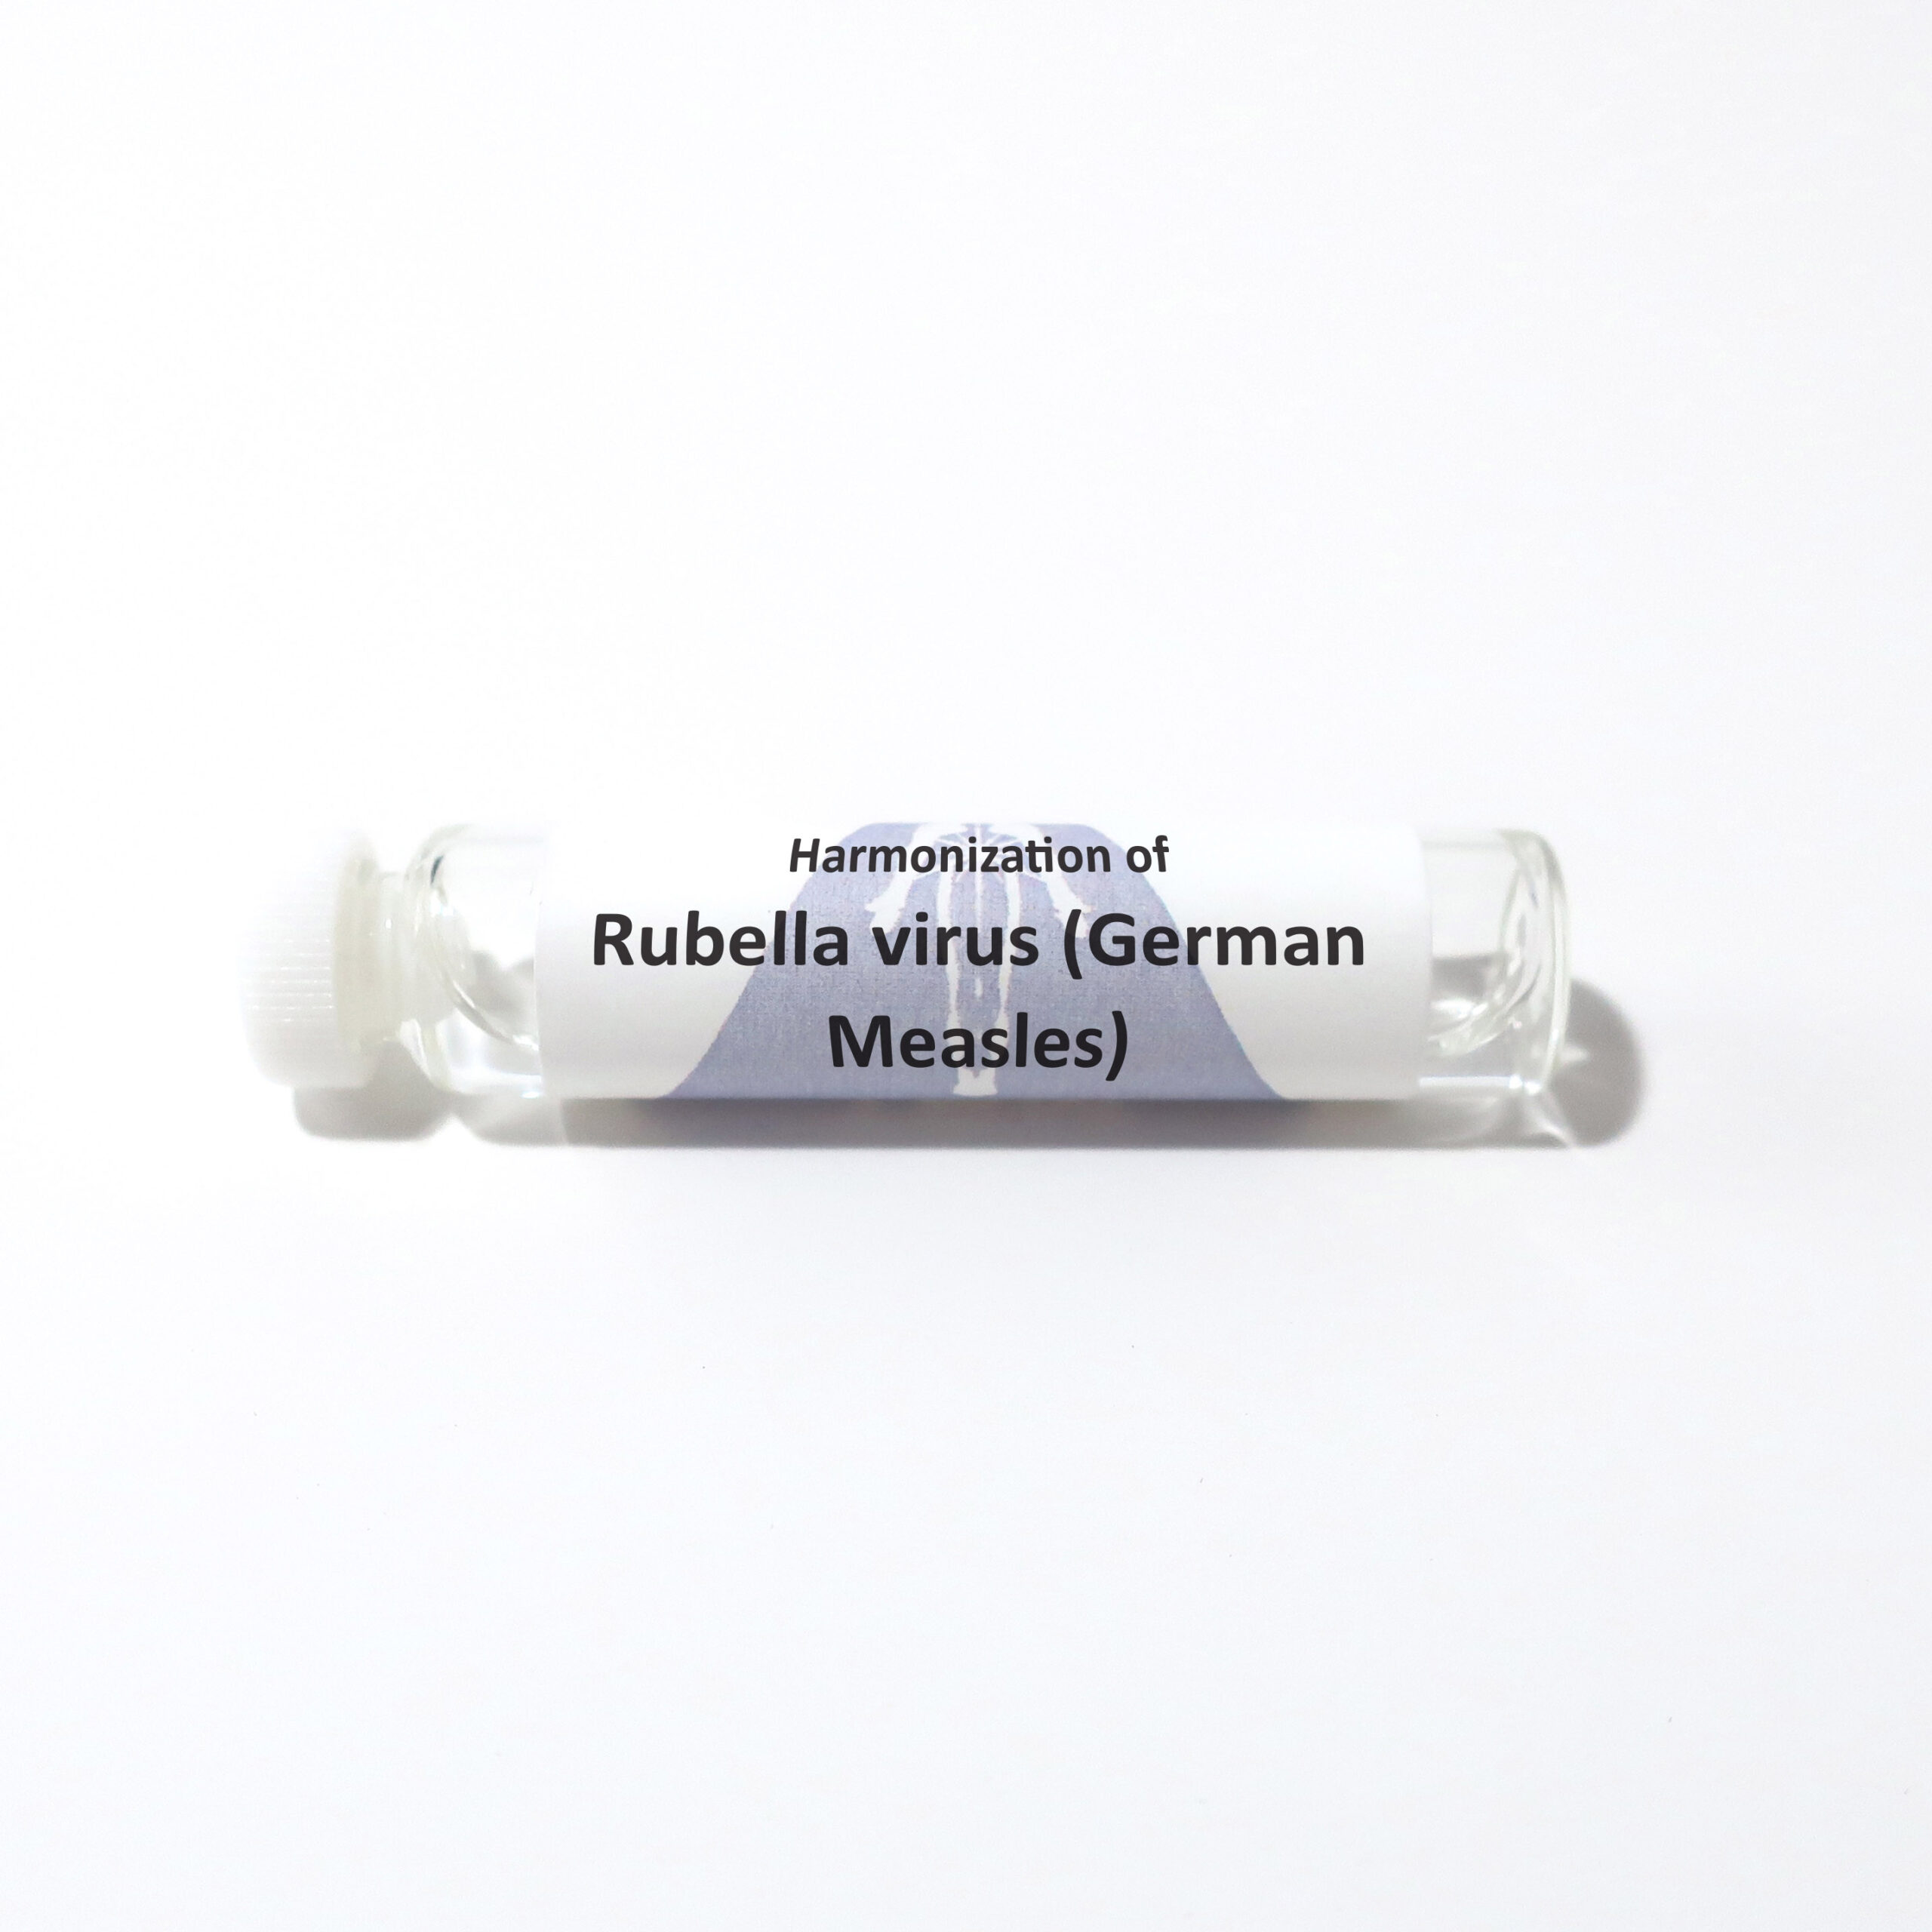 Rubella virus (German Measles)